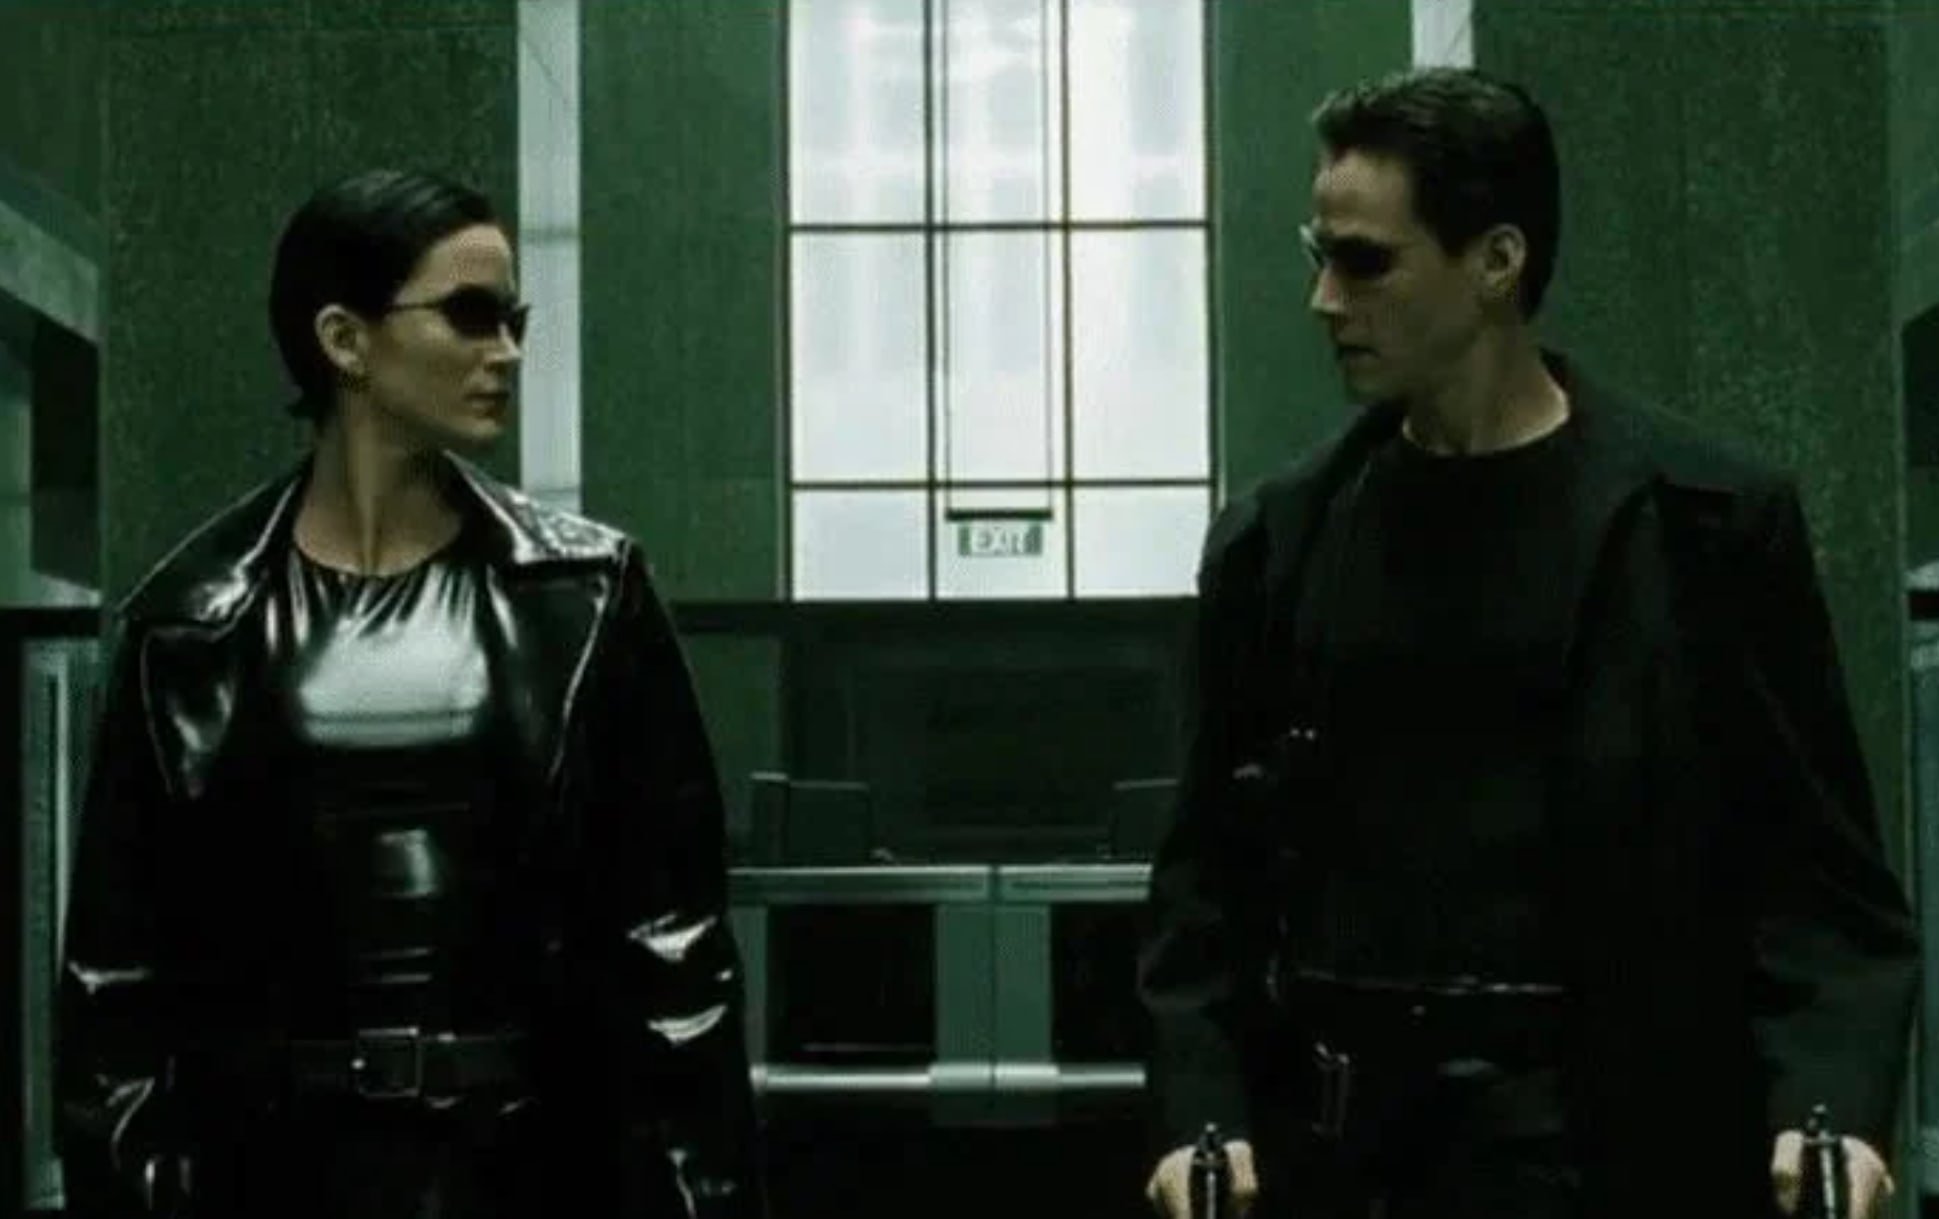 Still from the movie The Matrix - Reddit